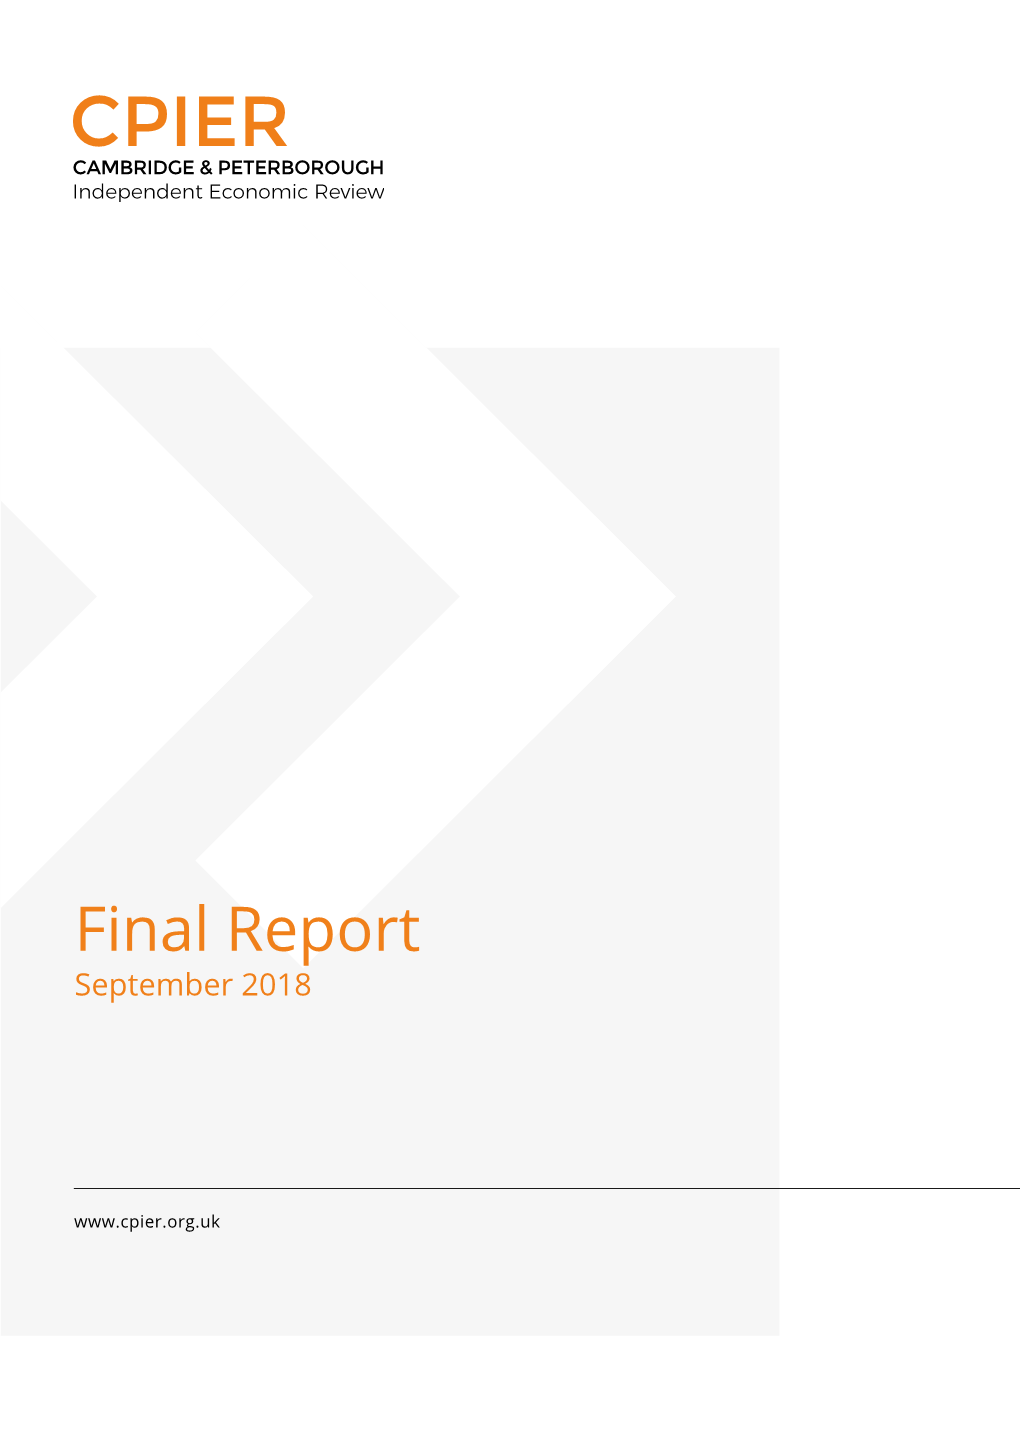 Final Report September 2018